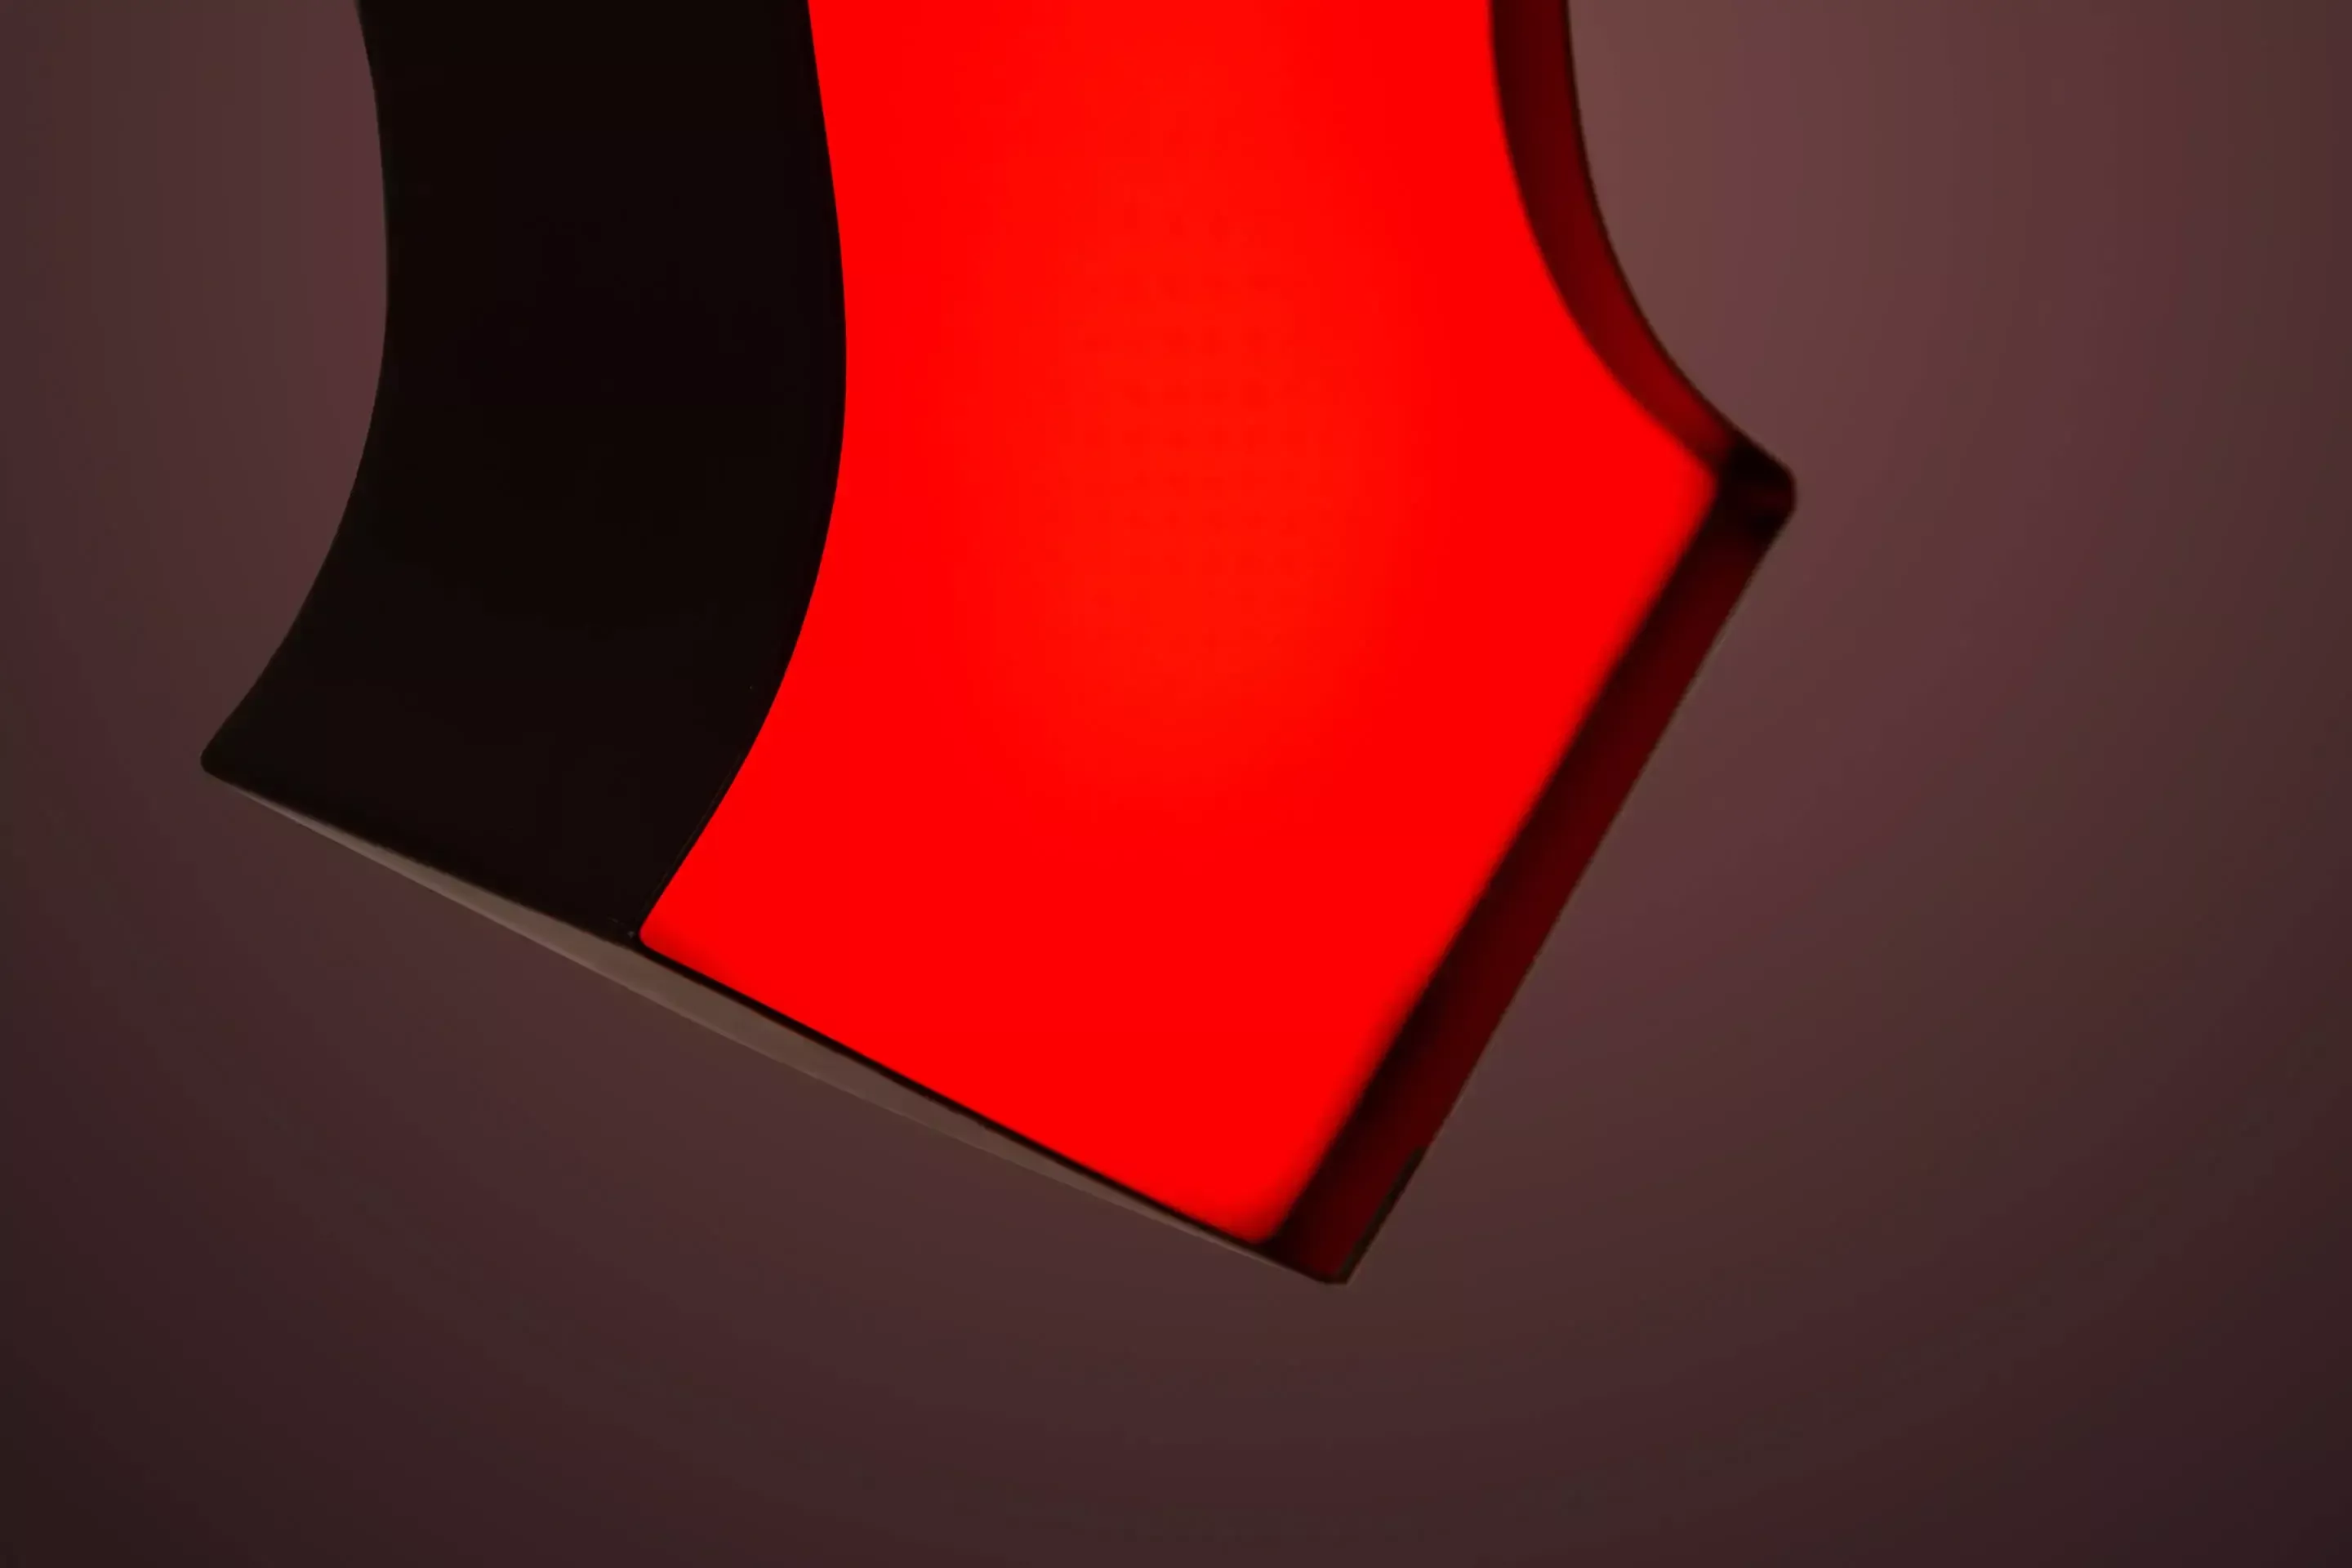 Lettera M - lettera illuminata a LED personalizzata in rosso, dettaglio